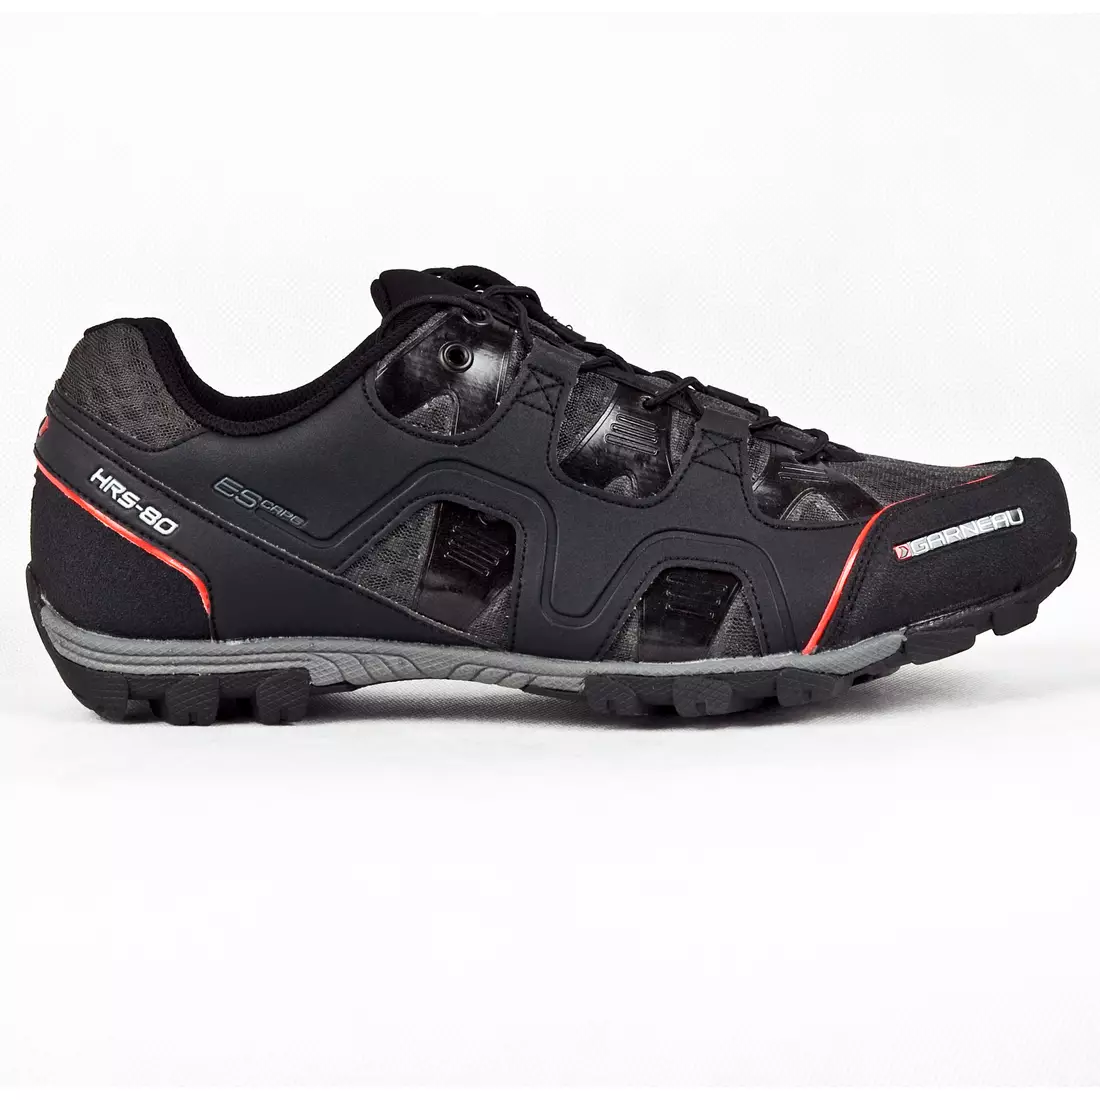 Louis Garneu - ESCAPE men's cycling shoes, color: black